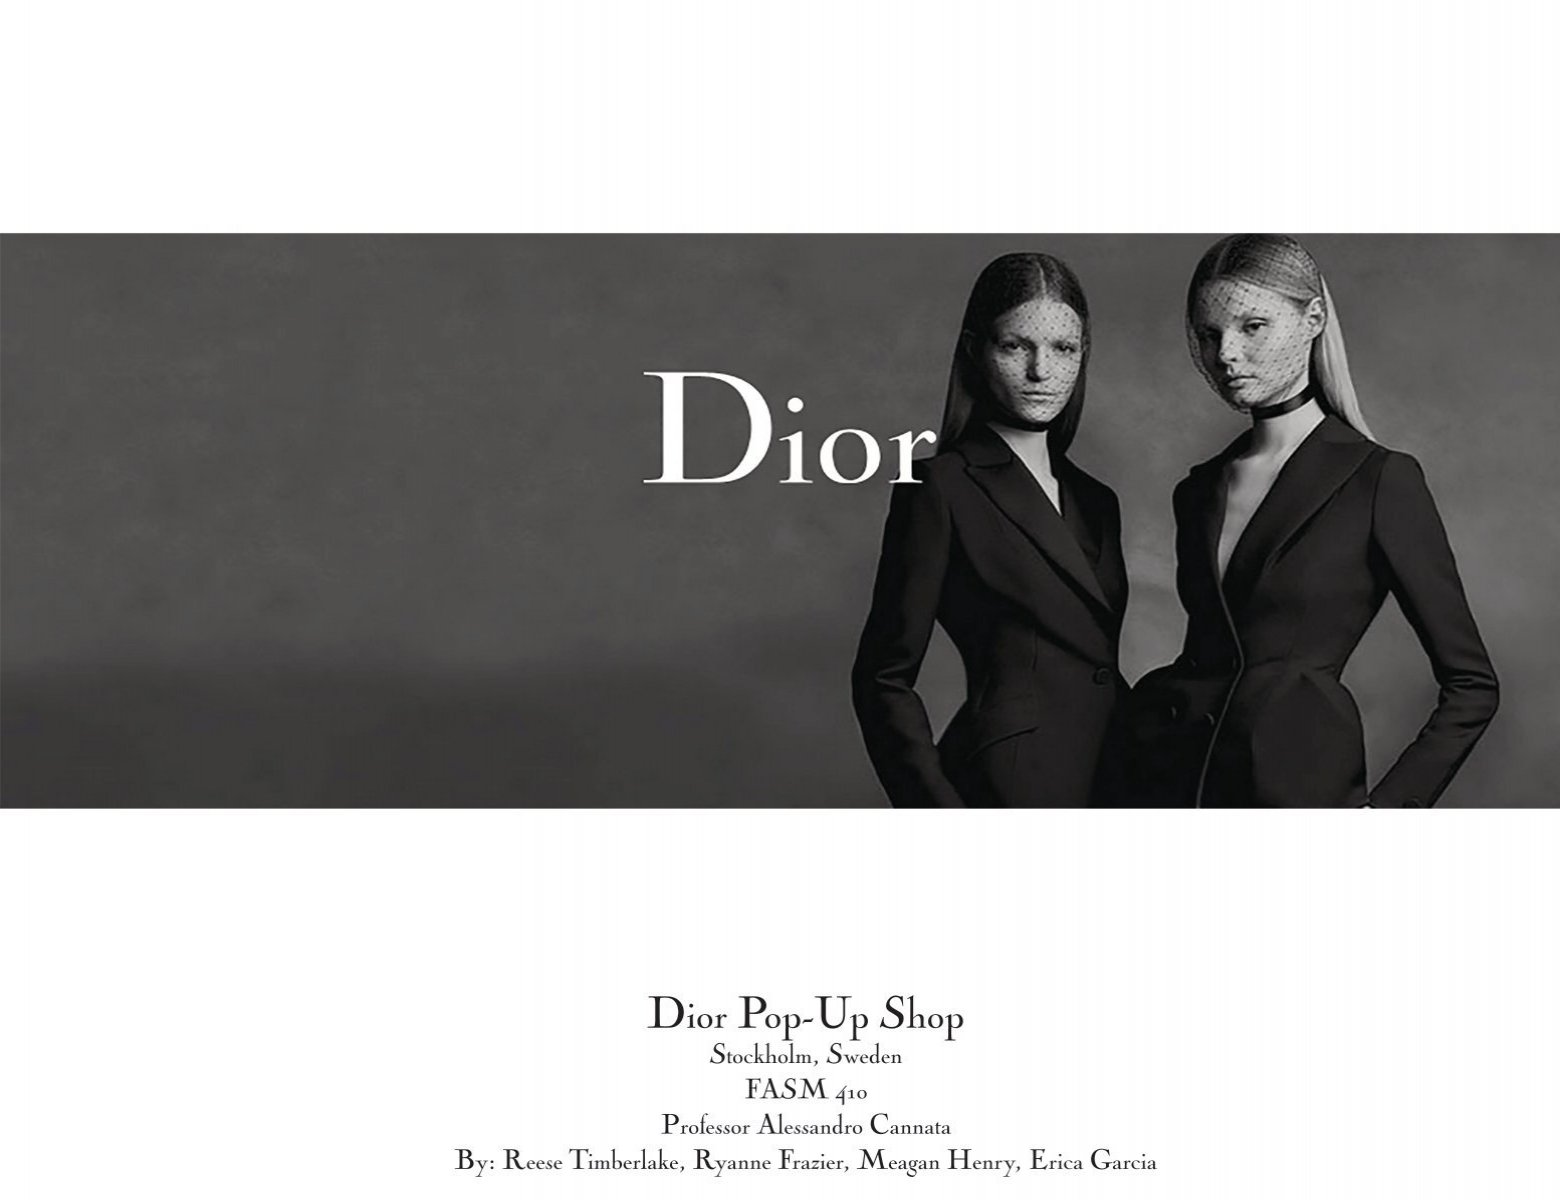 Christian Dior - Org Chart, Teams, Culture & Jobs